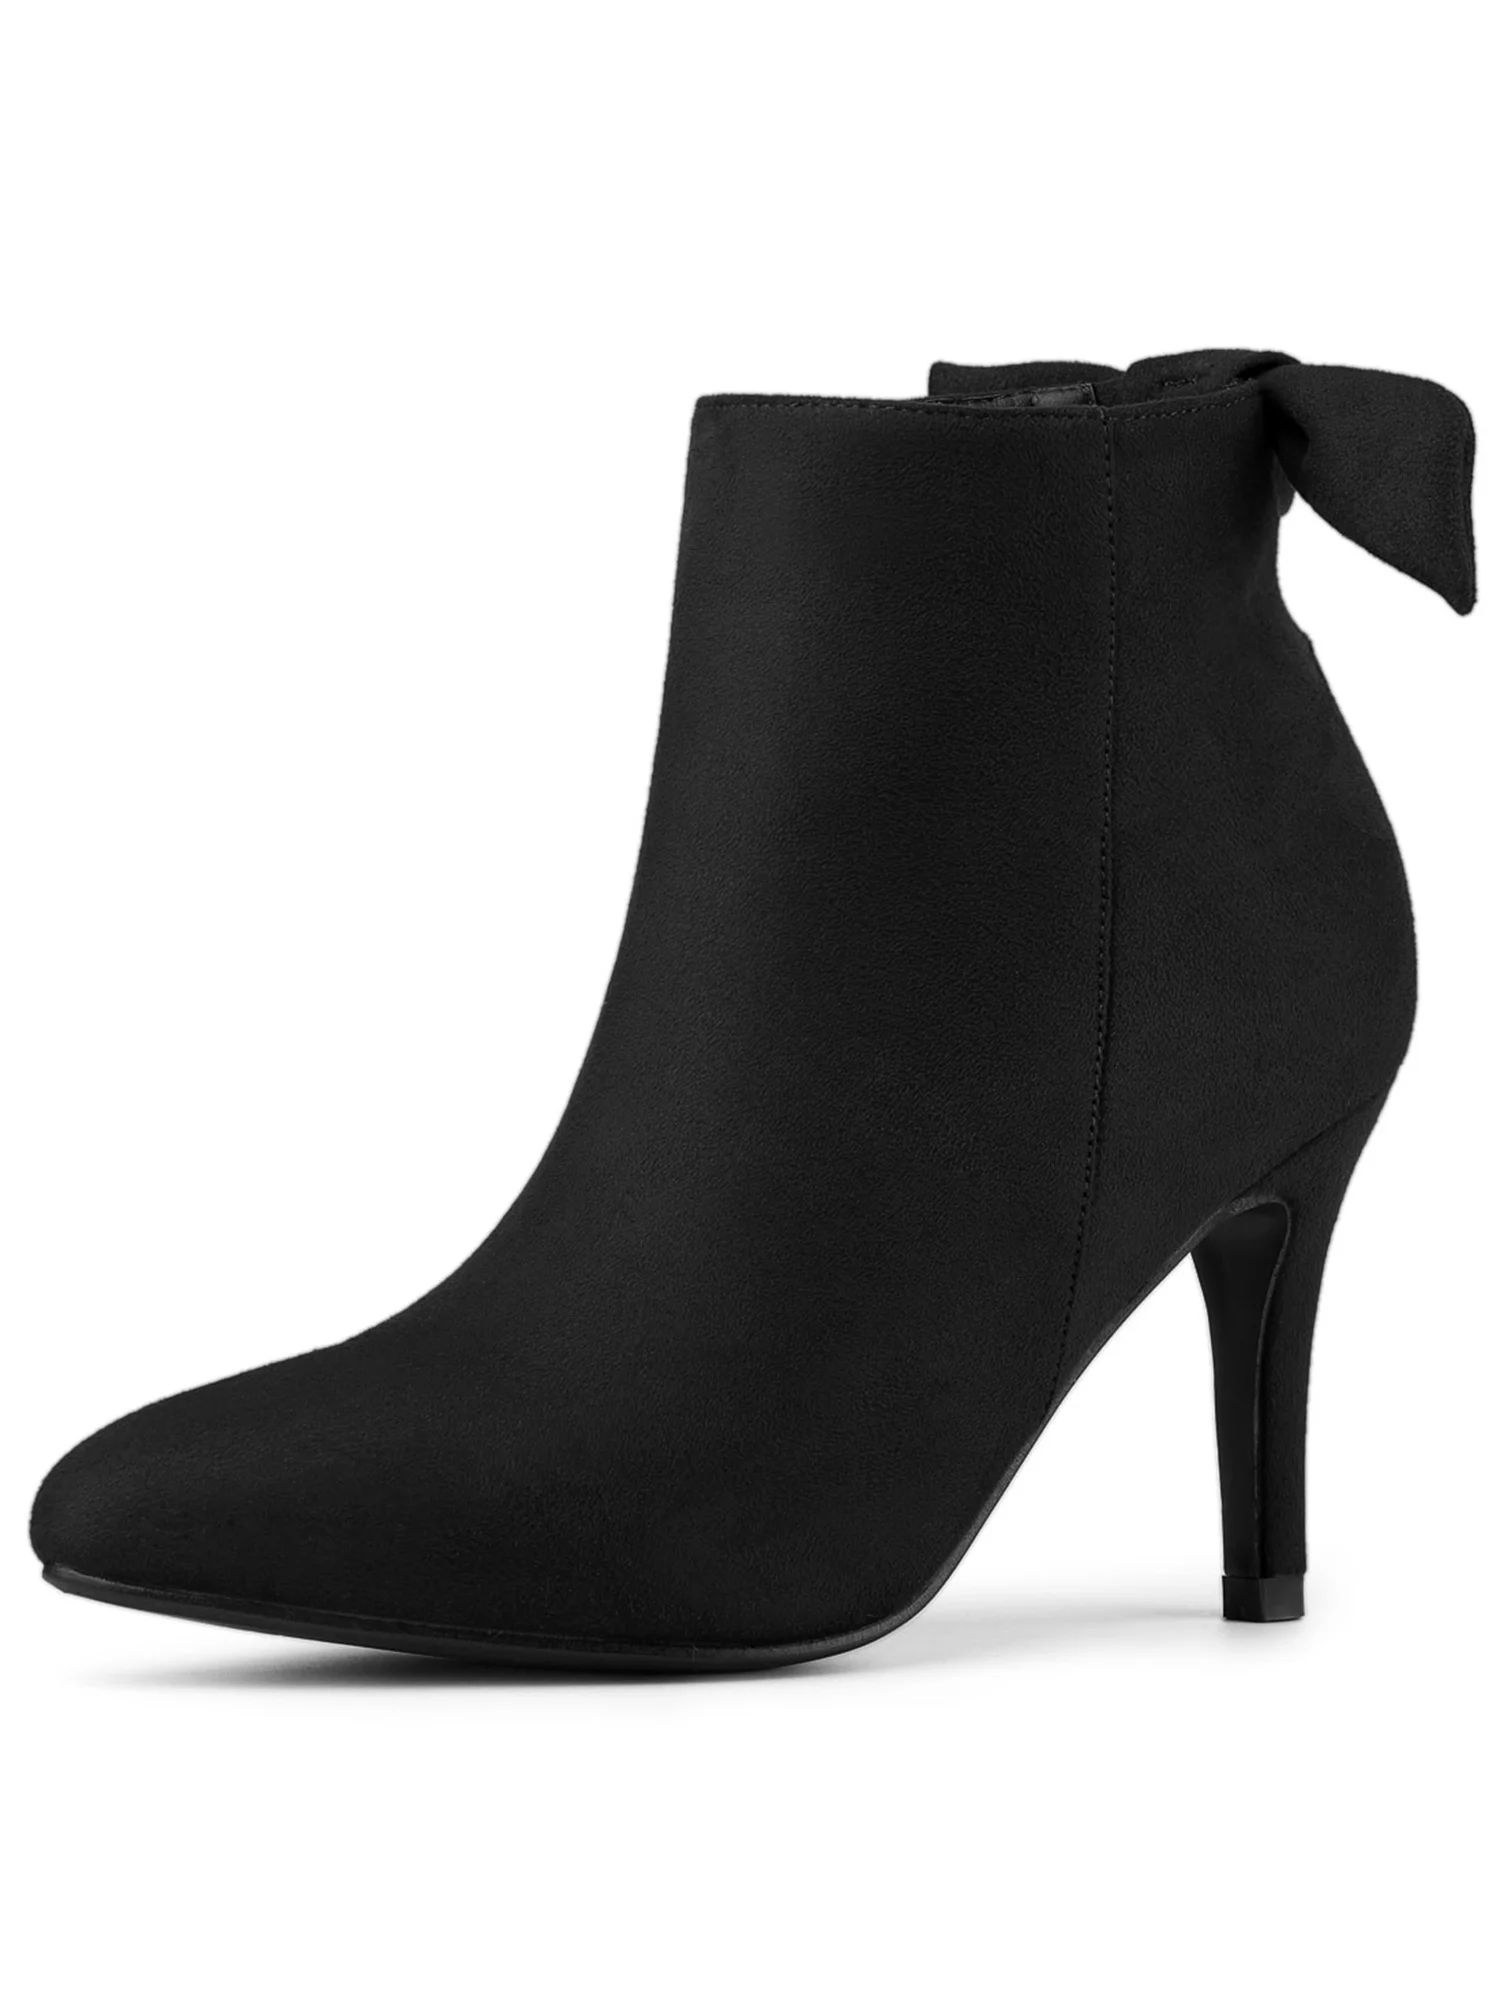 Allegra K Women's Pointed Toe Heel Side Ankle Stiletto Boots - Walmart.com | Walmart (US)